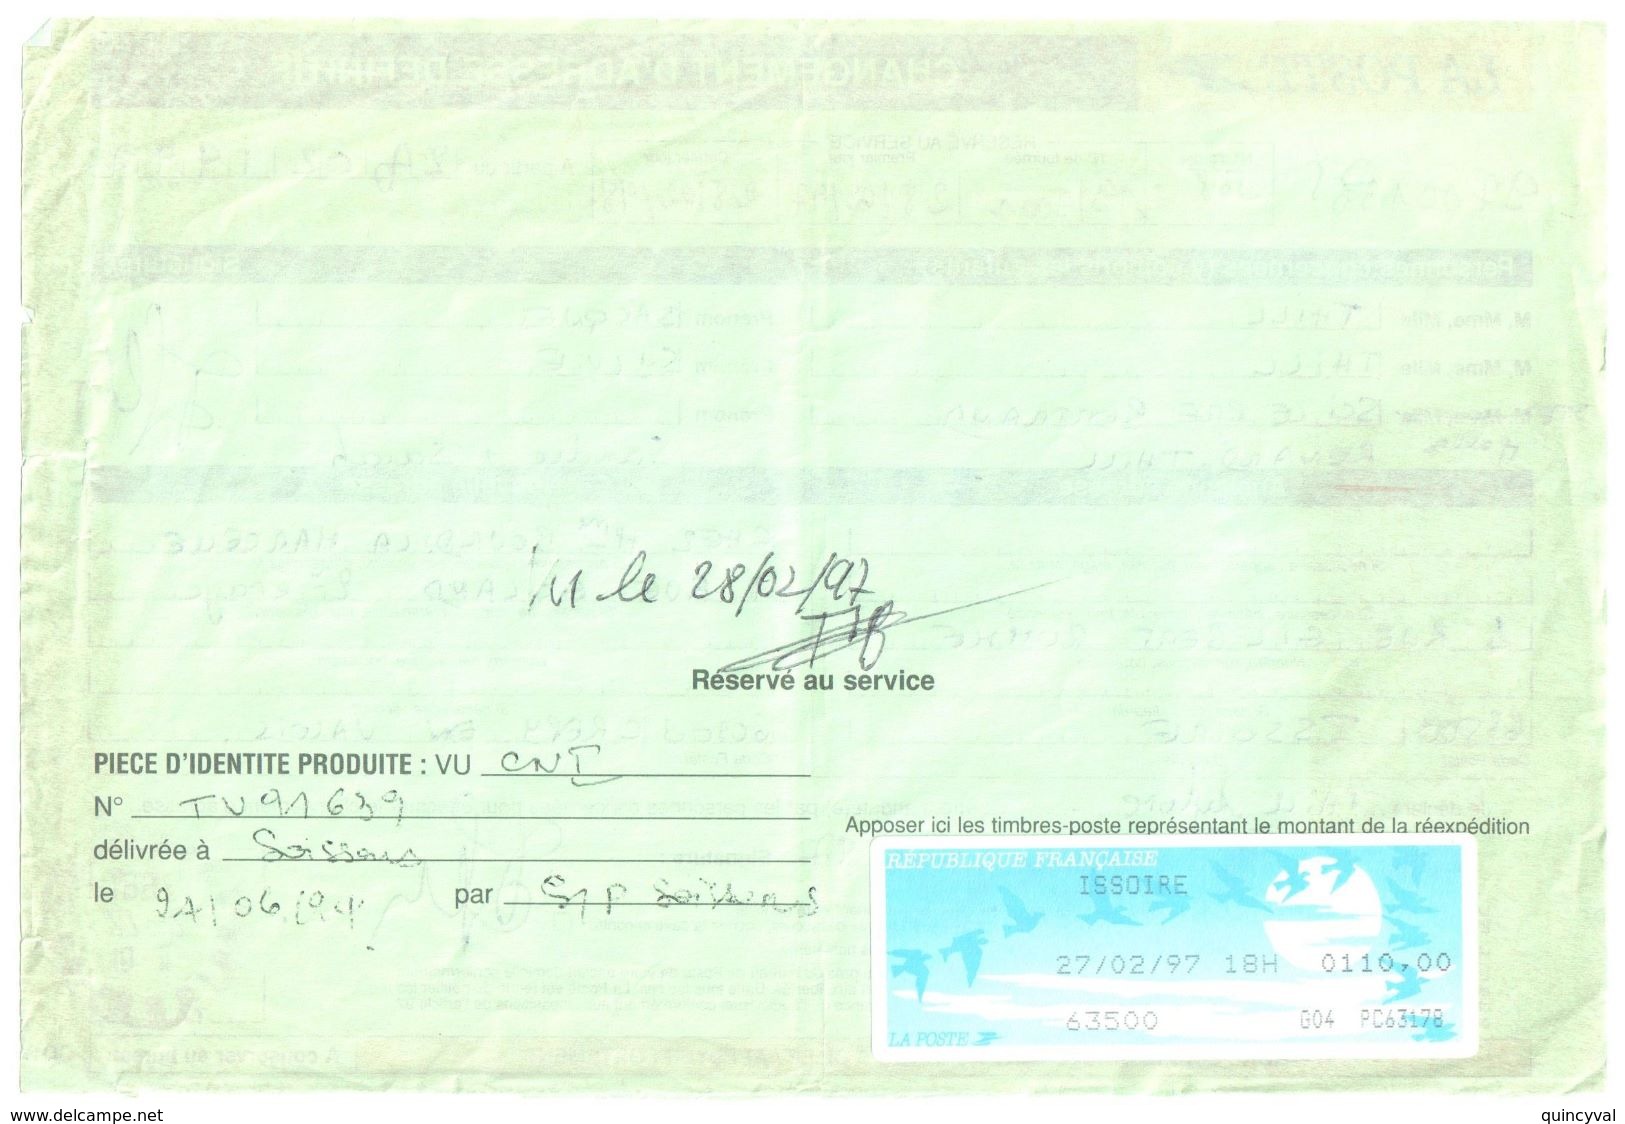 4487 ISSOIRE Puy De Dôme Formule 755 B Changement D'adresse Définitif Taxe 110 F Etiquette Guichet Ob 27 2 1997 - Documents Of Postal Services